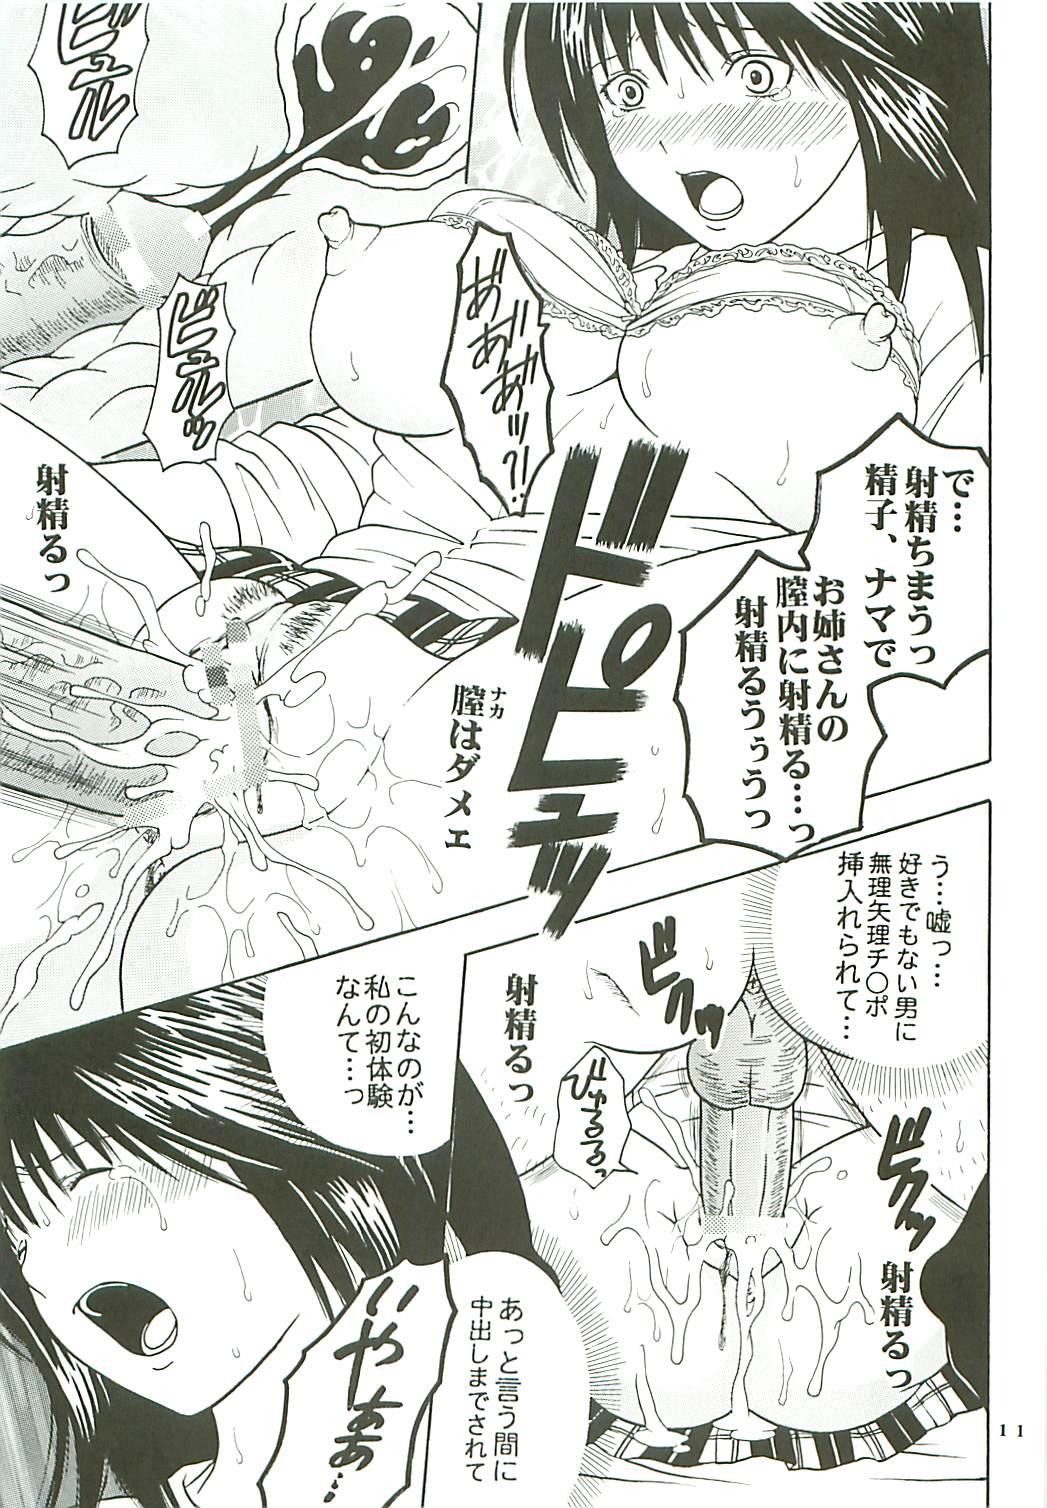 Young Tits Chitsui Gentei Nakadashi Limited vol.3 - Hatsukoi limited Ninfeta - Page 12